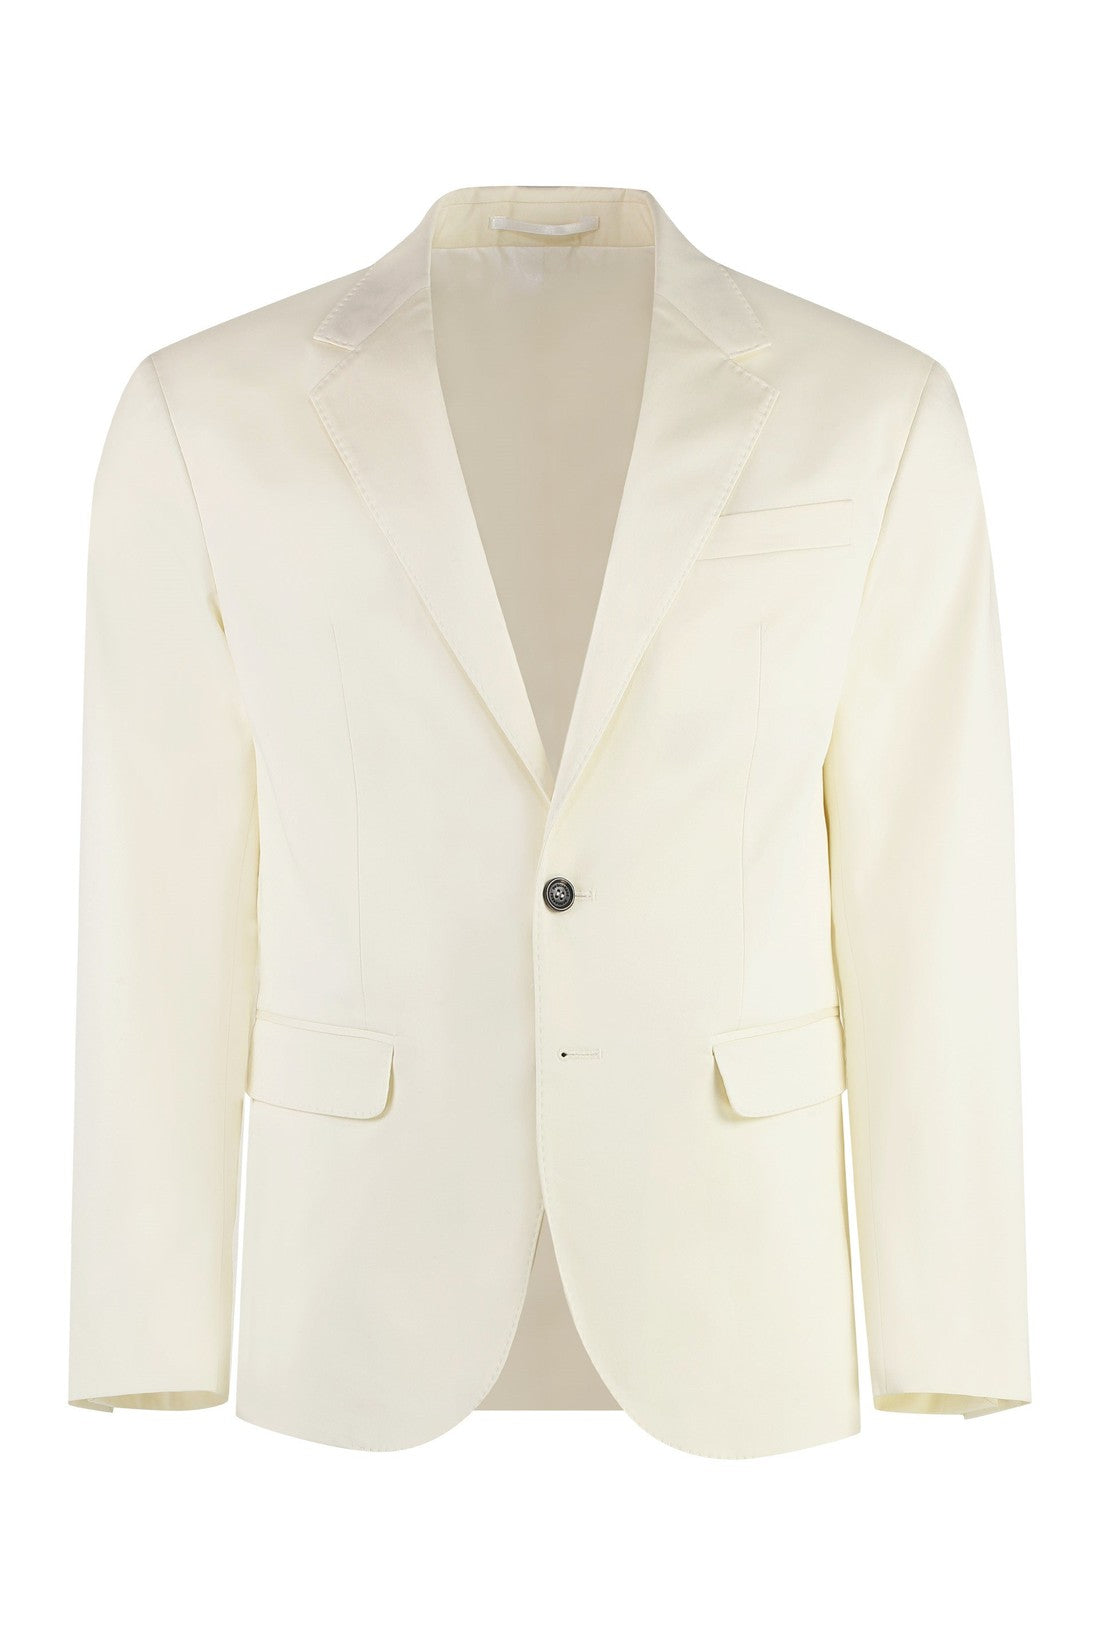 Dsquared2-OUTLET-SALE-Two-piece cotton suit-ARCHIVIST